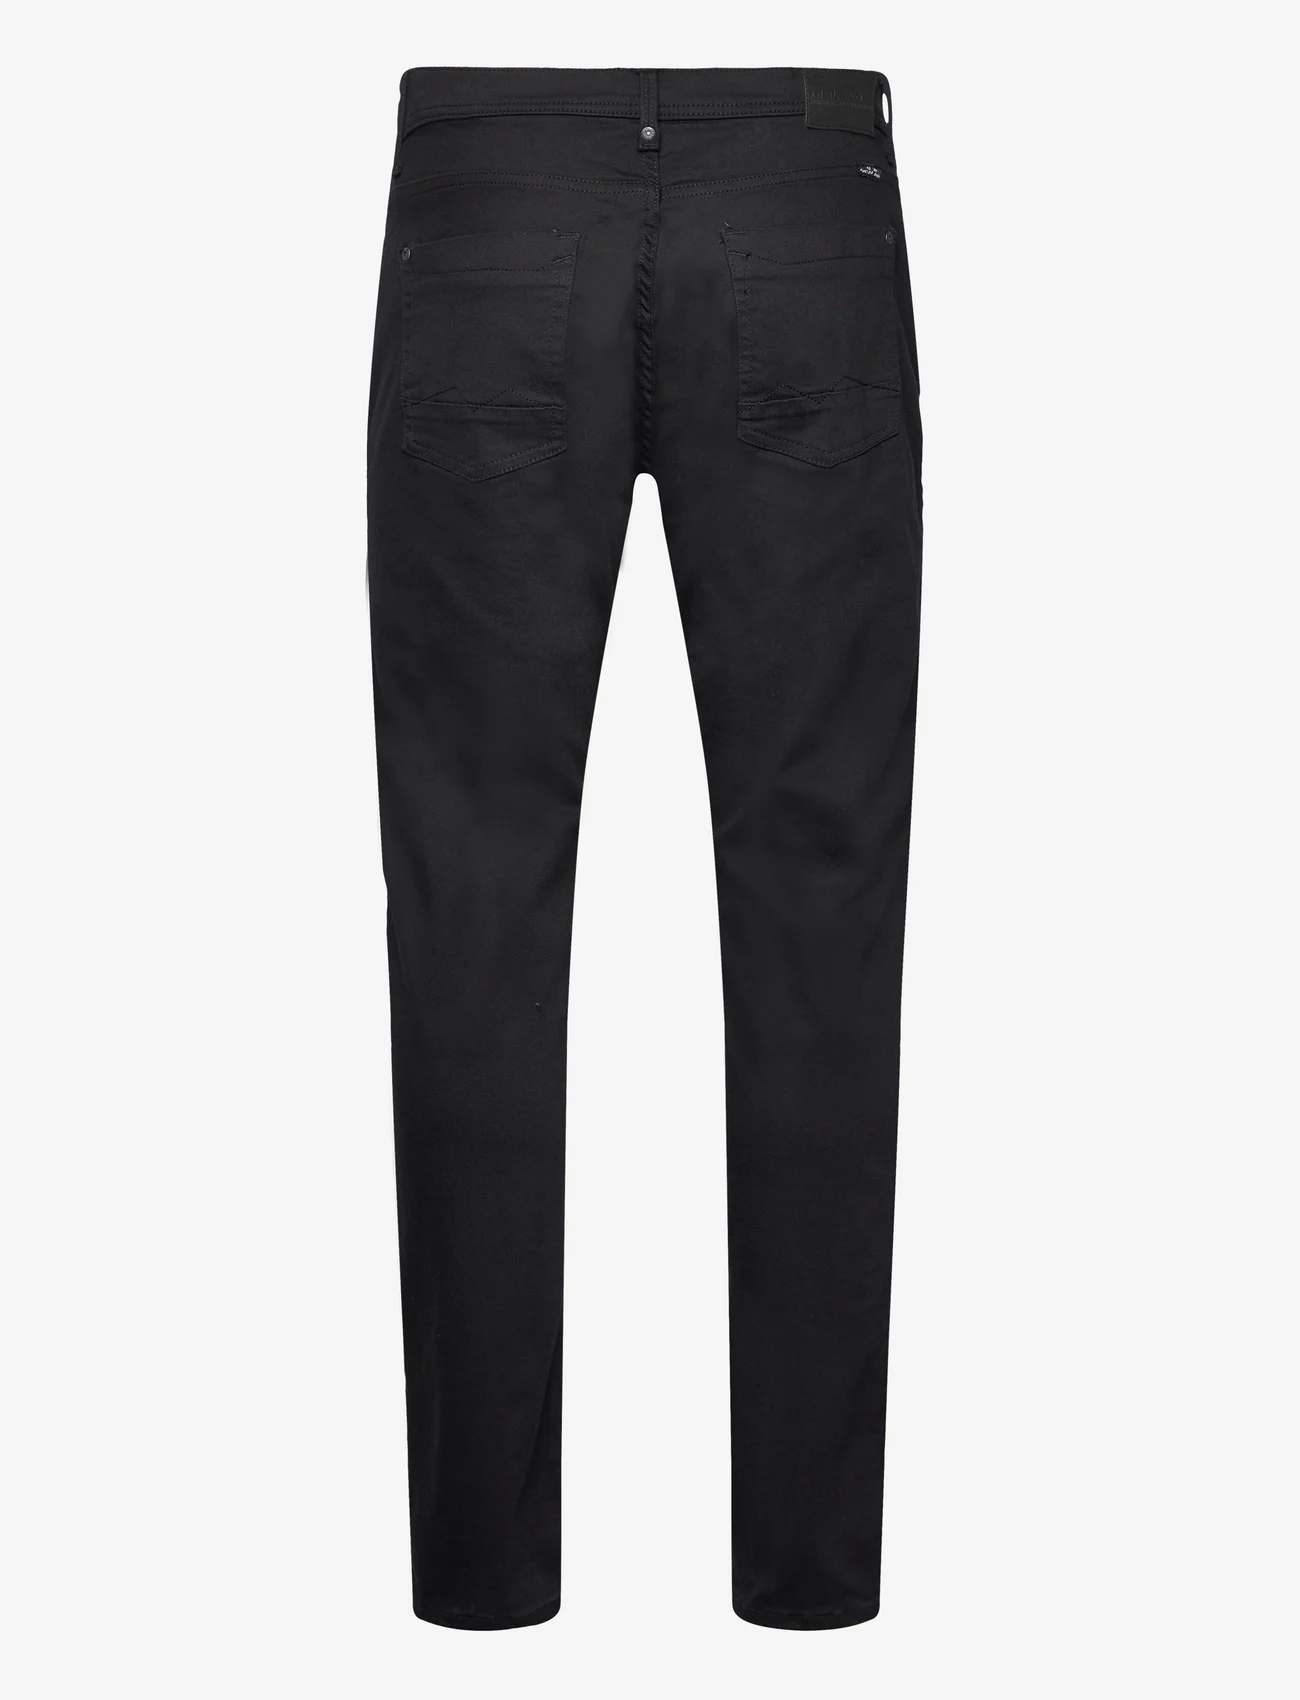 Blend - Twister fit Multiflex - NOOS - slim fit jeans - denim unwashed black - 1